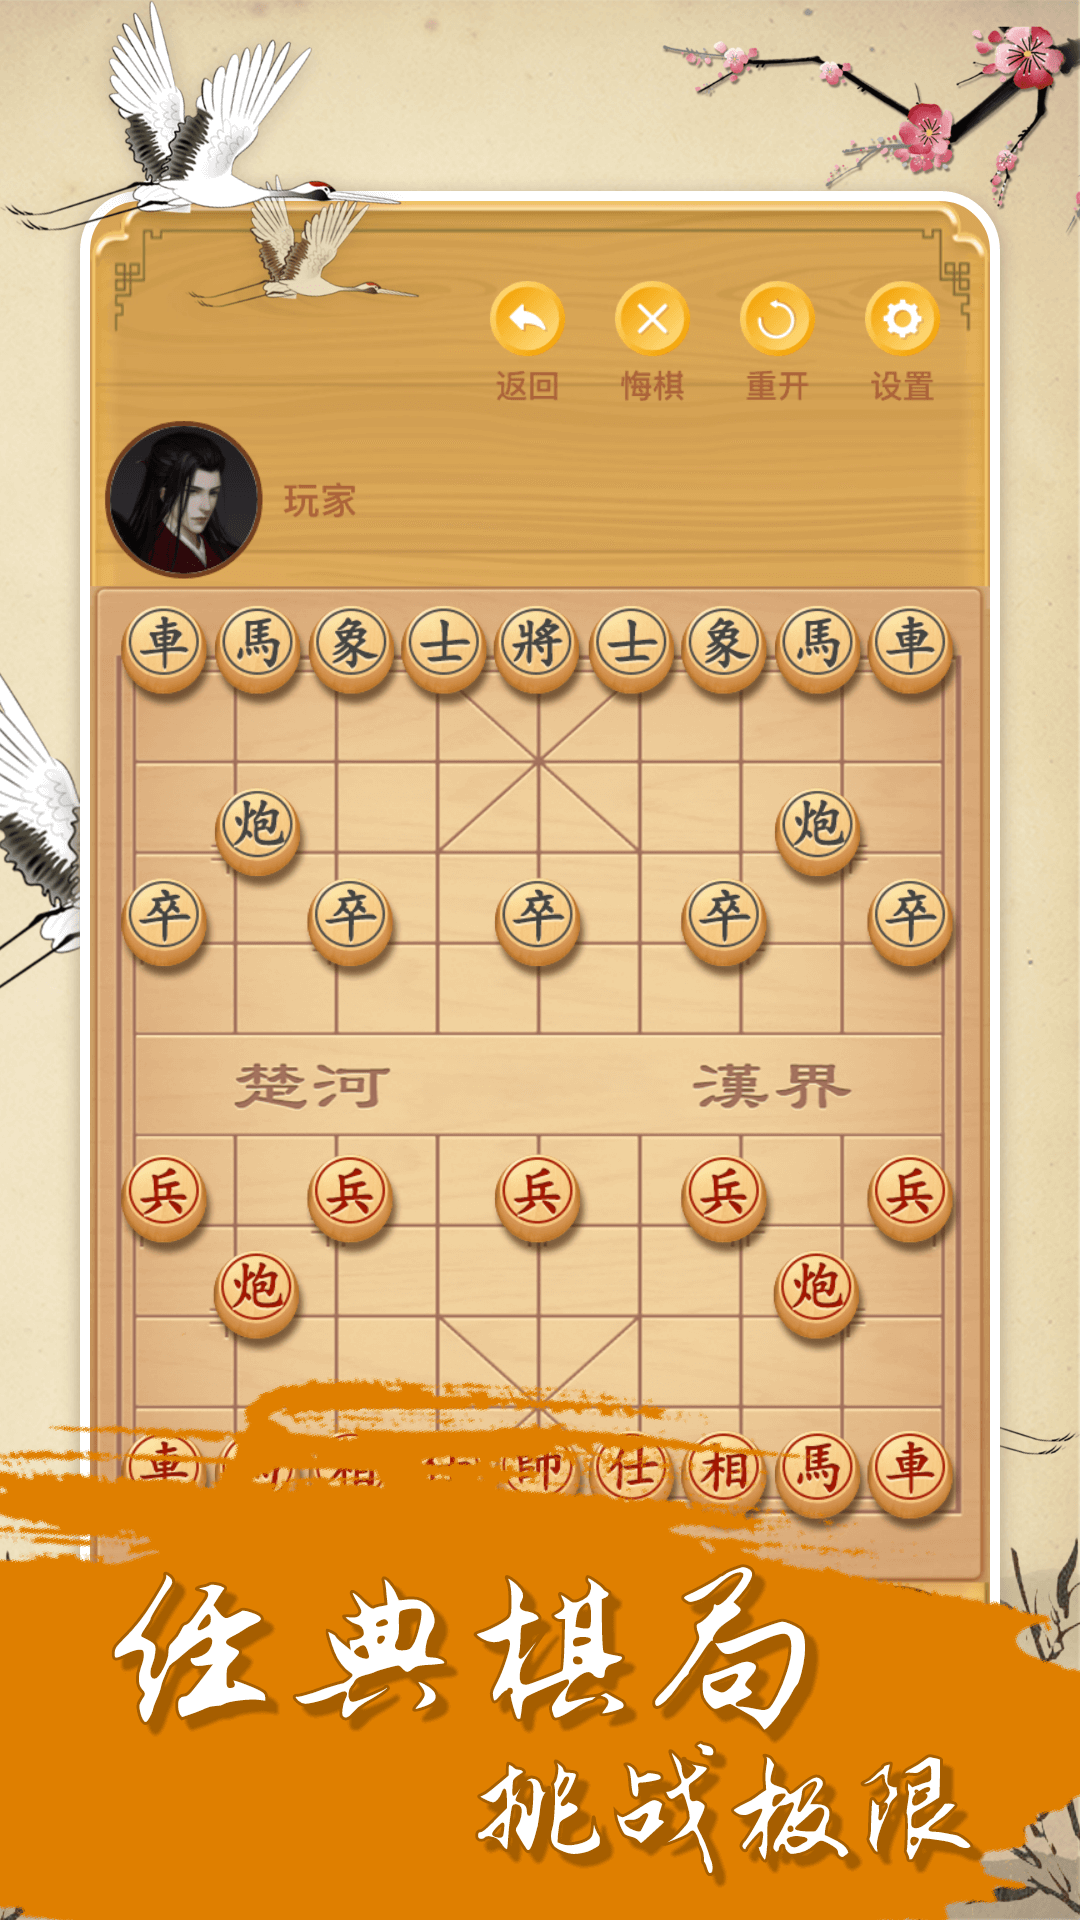 中国经典象棋v1.6.0截图1